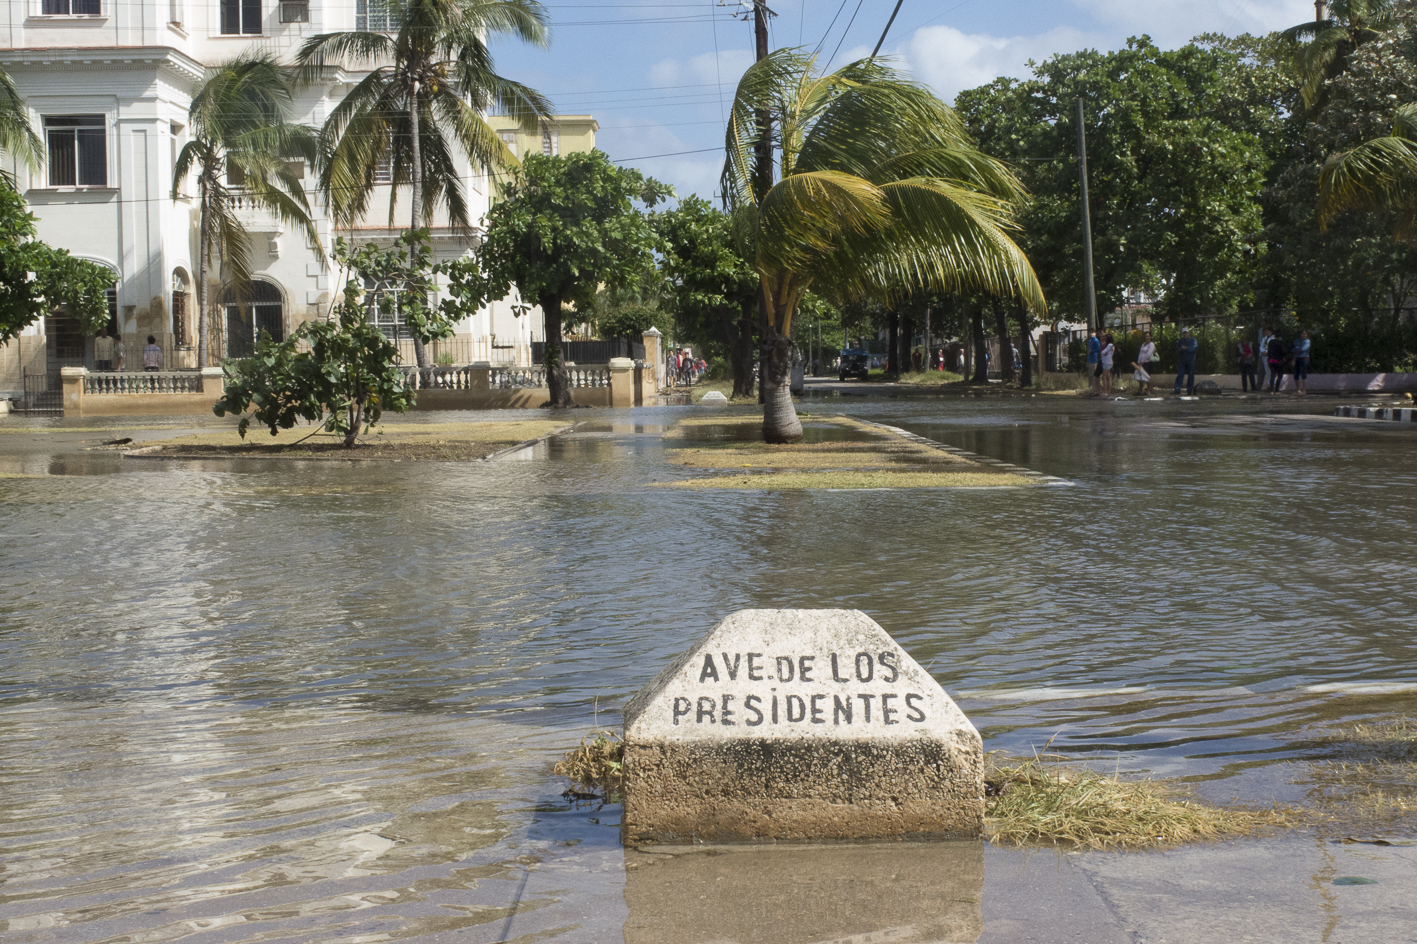 La penetracion inundó la Avenida de los Presidentes hasta la calle 9 (foto de Yanela Durán)